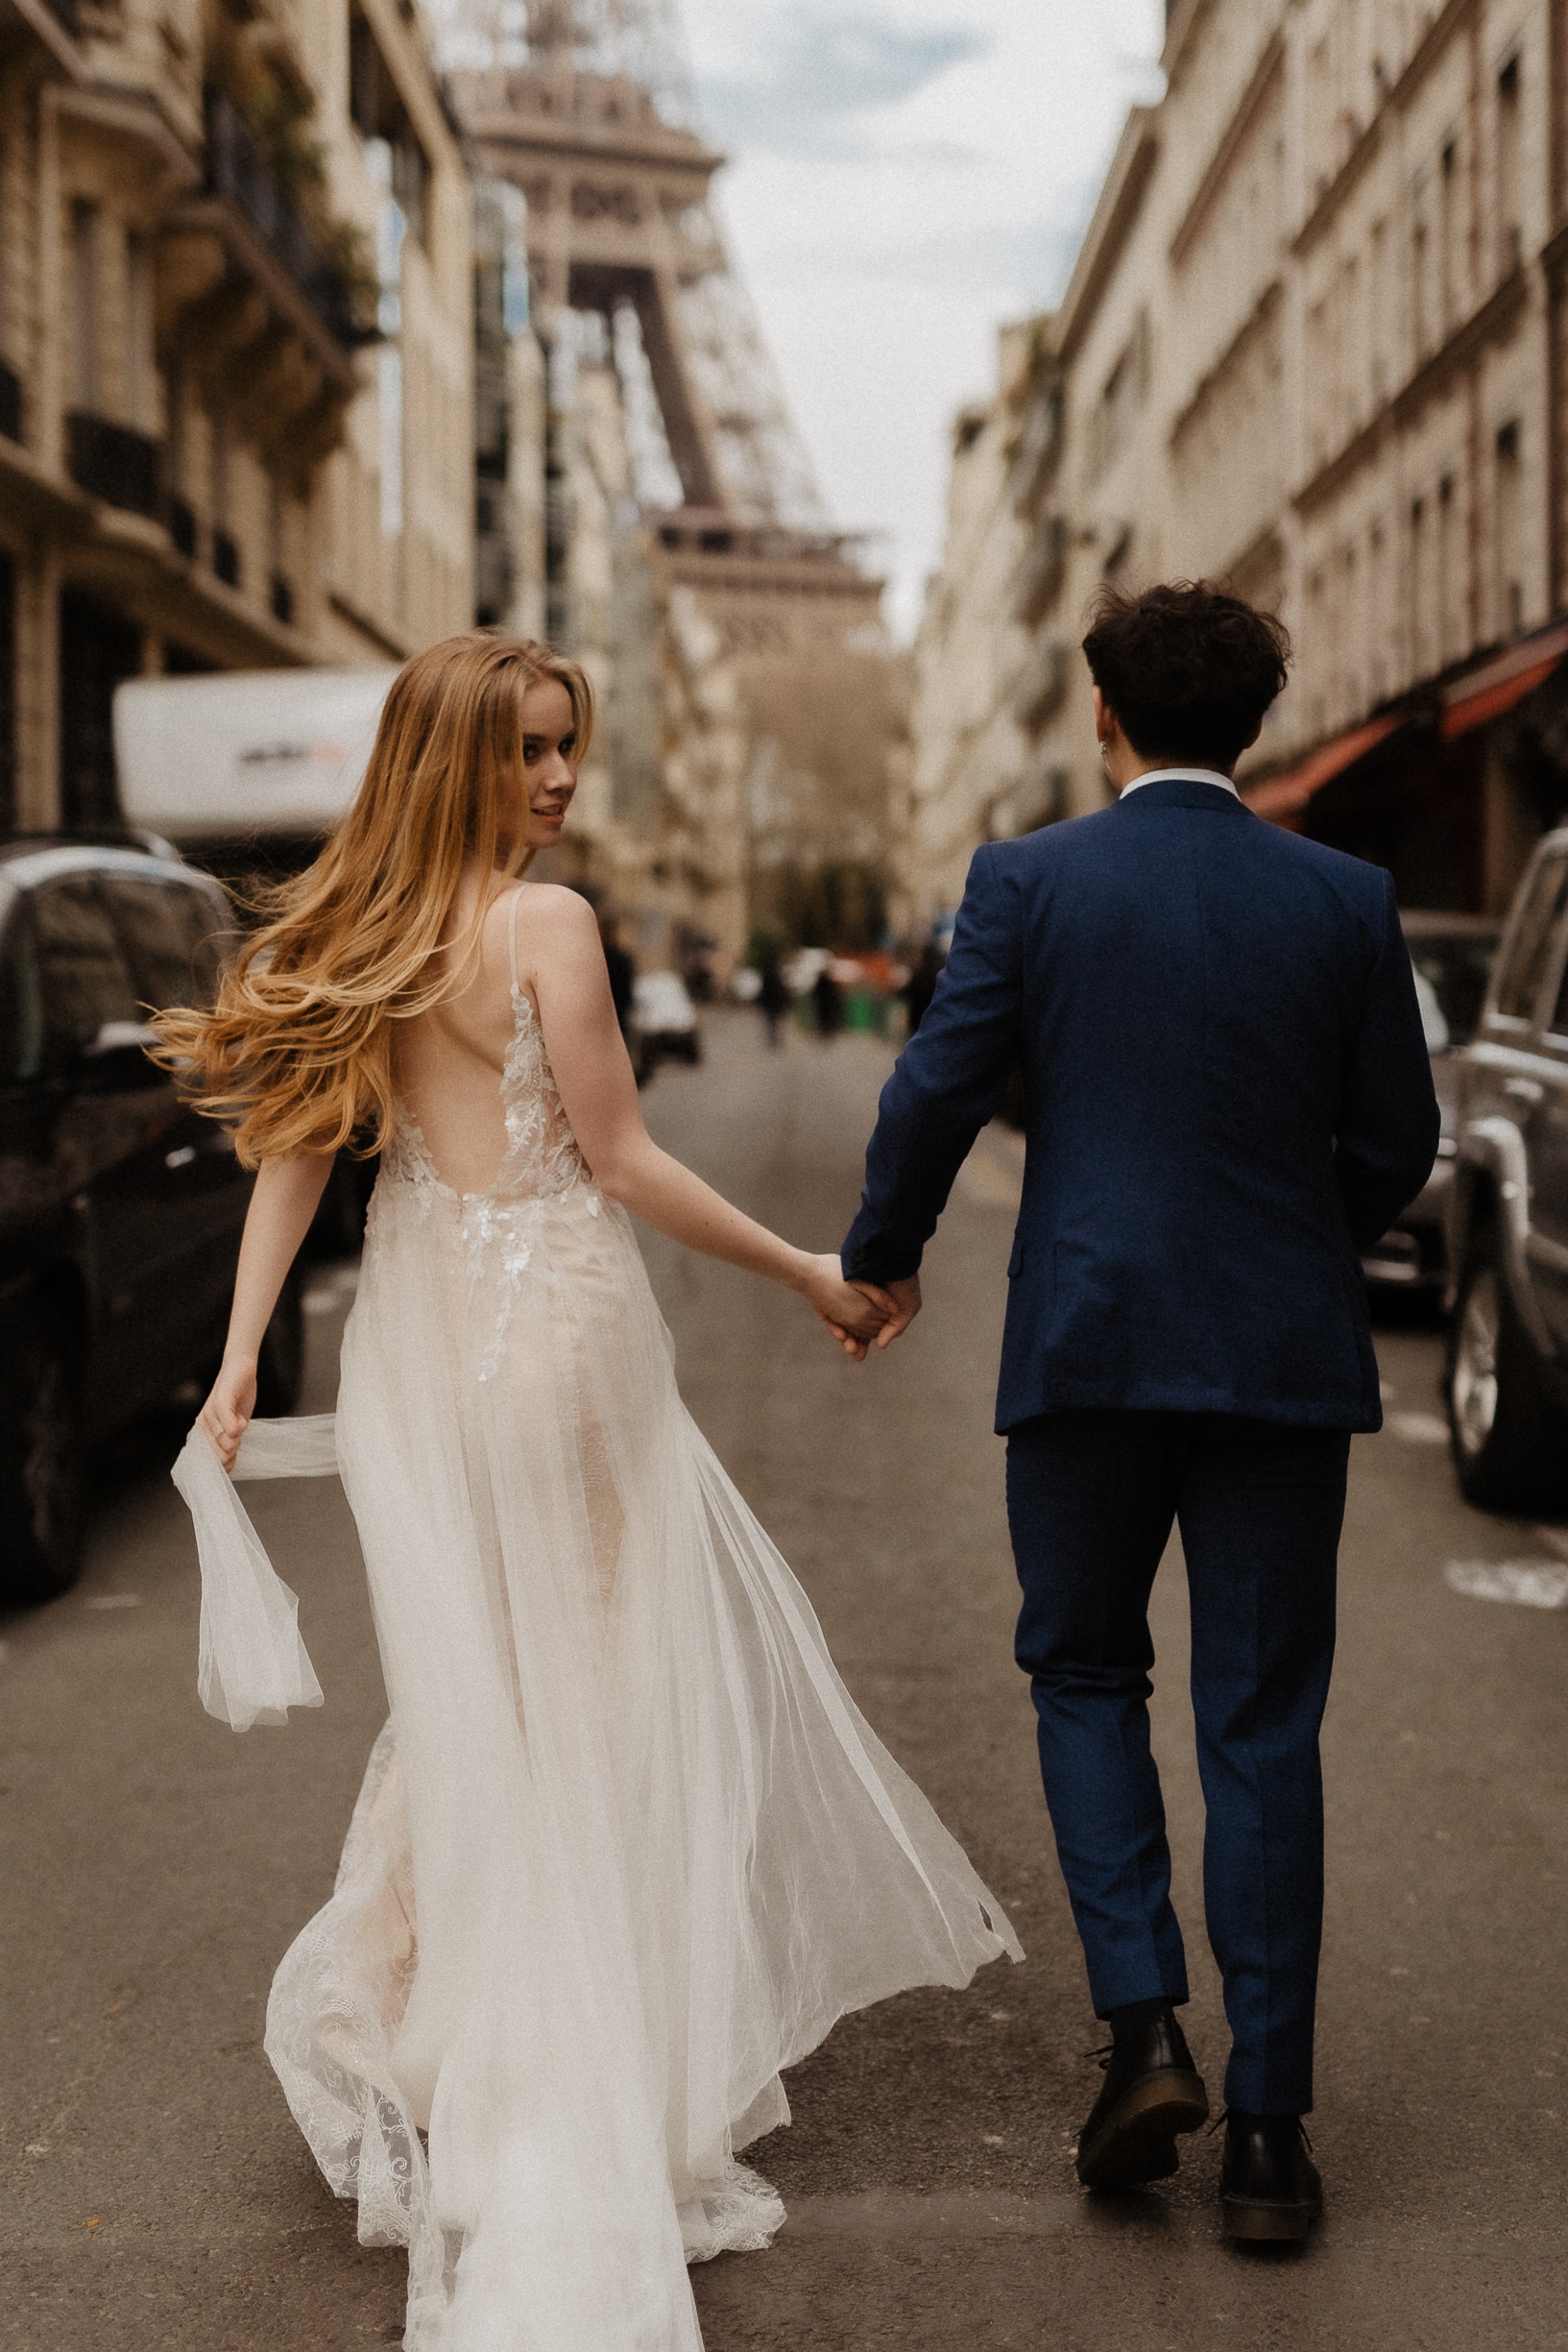 décoration de mariage parisienne chic et élégante